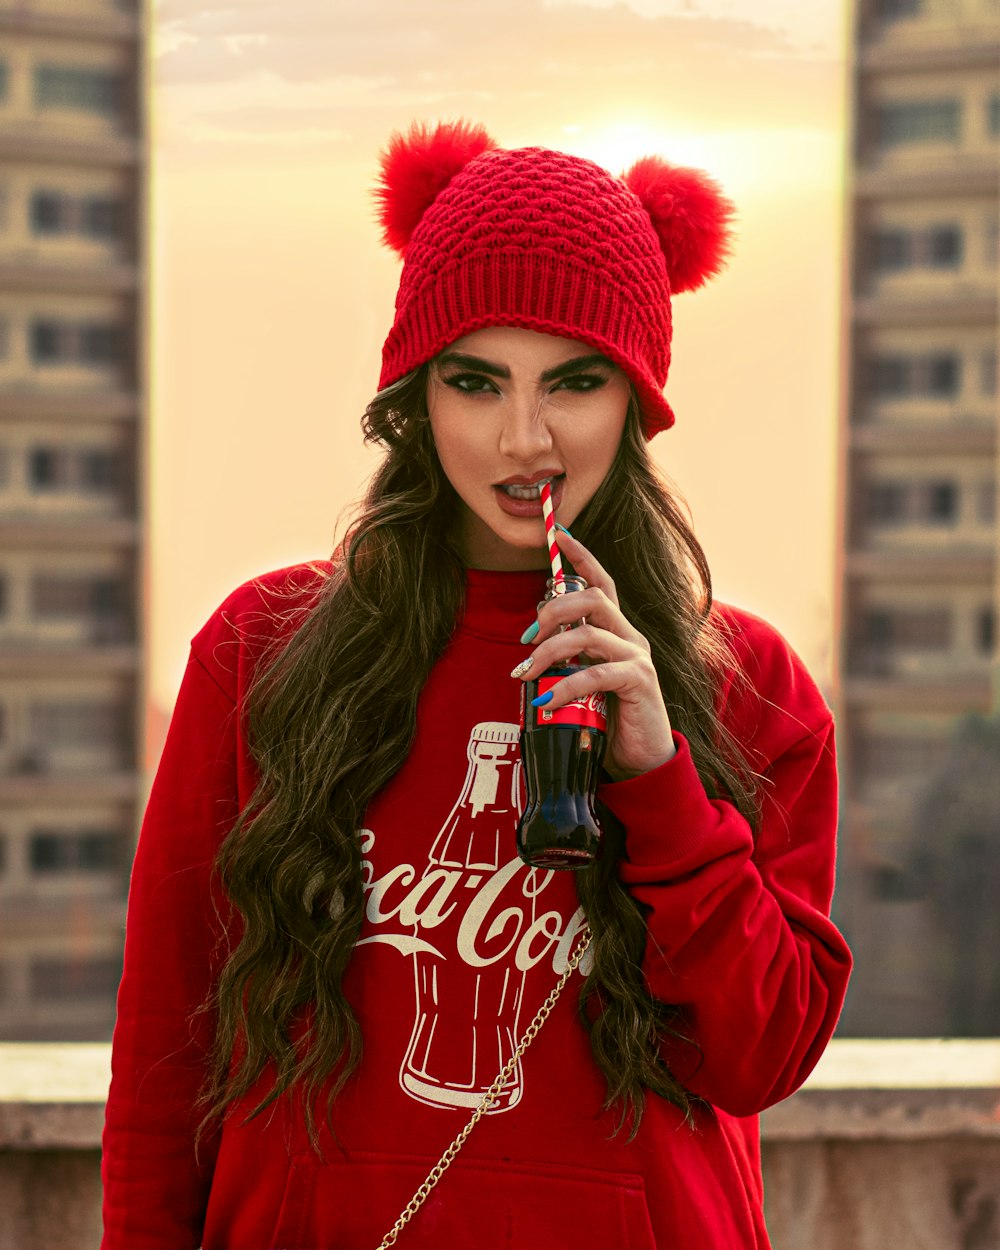 Frau in rotem Kapuzenpulli trinkt Coca Cola